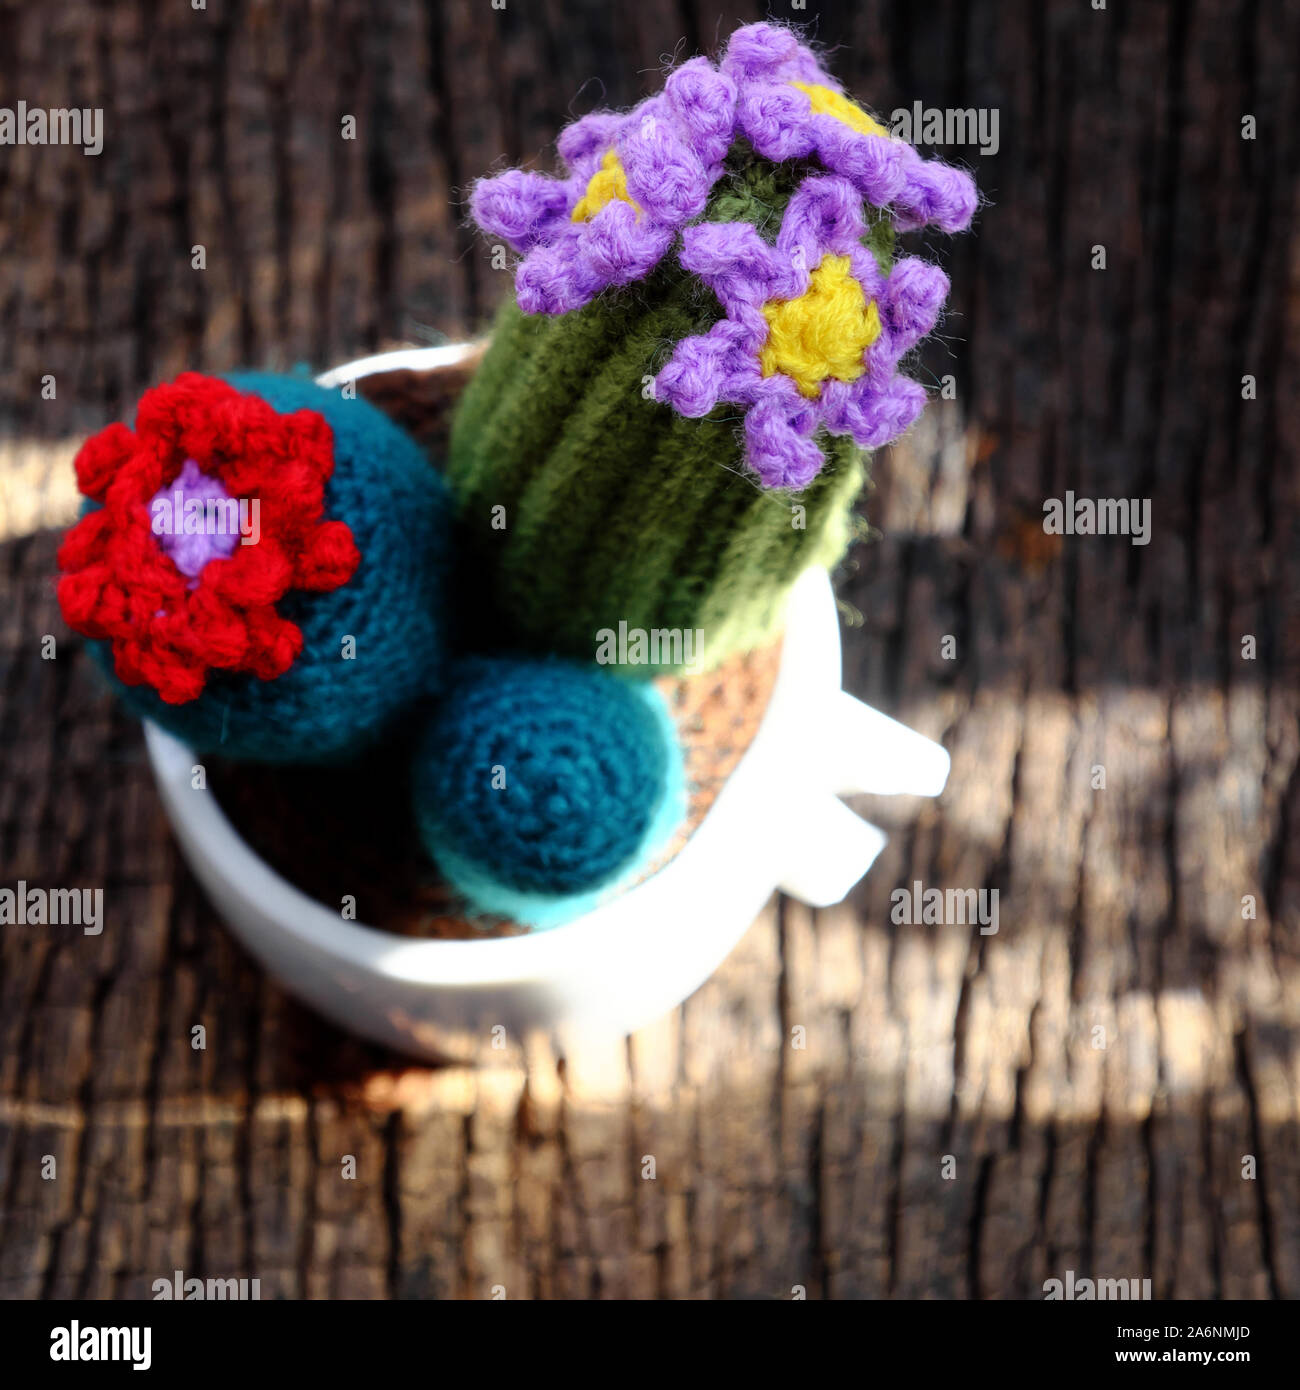 Schöne handgemachte Produkt für dekorieren, Kakteen und Cactus flower Crochet von grün Garn, ornament Blumentopf auf Tisch im Freien in der Morgensonne Stockfoto